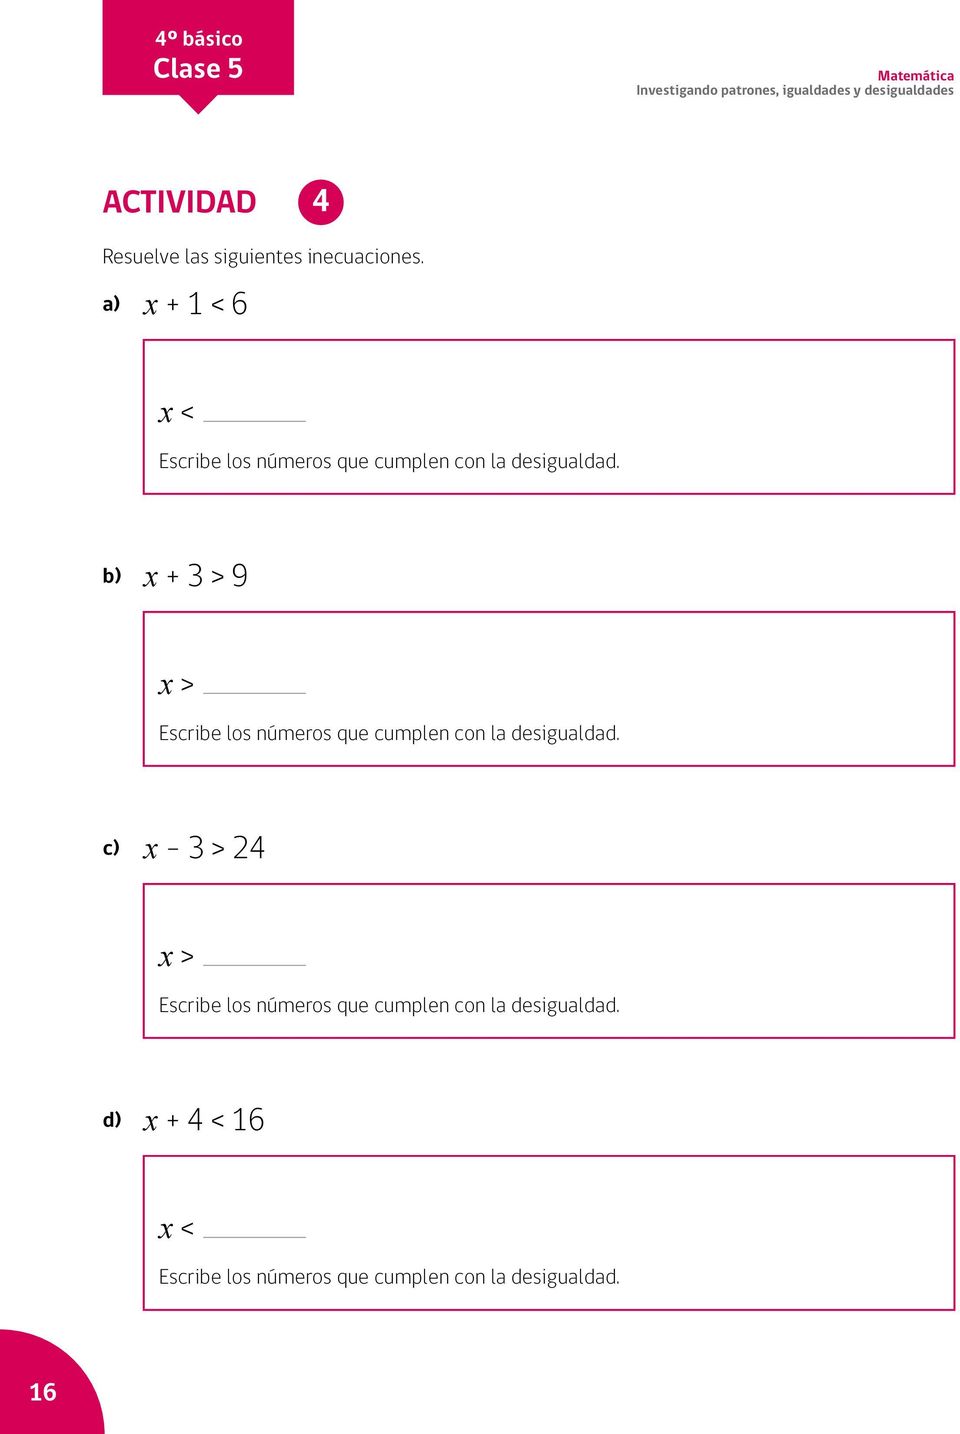 b) x + 3 > 9 x > Escribe los números que cumplen con la desigualdad.